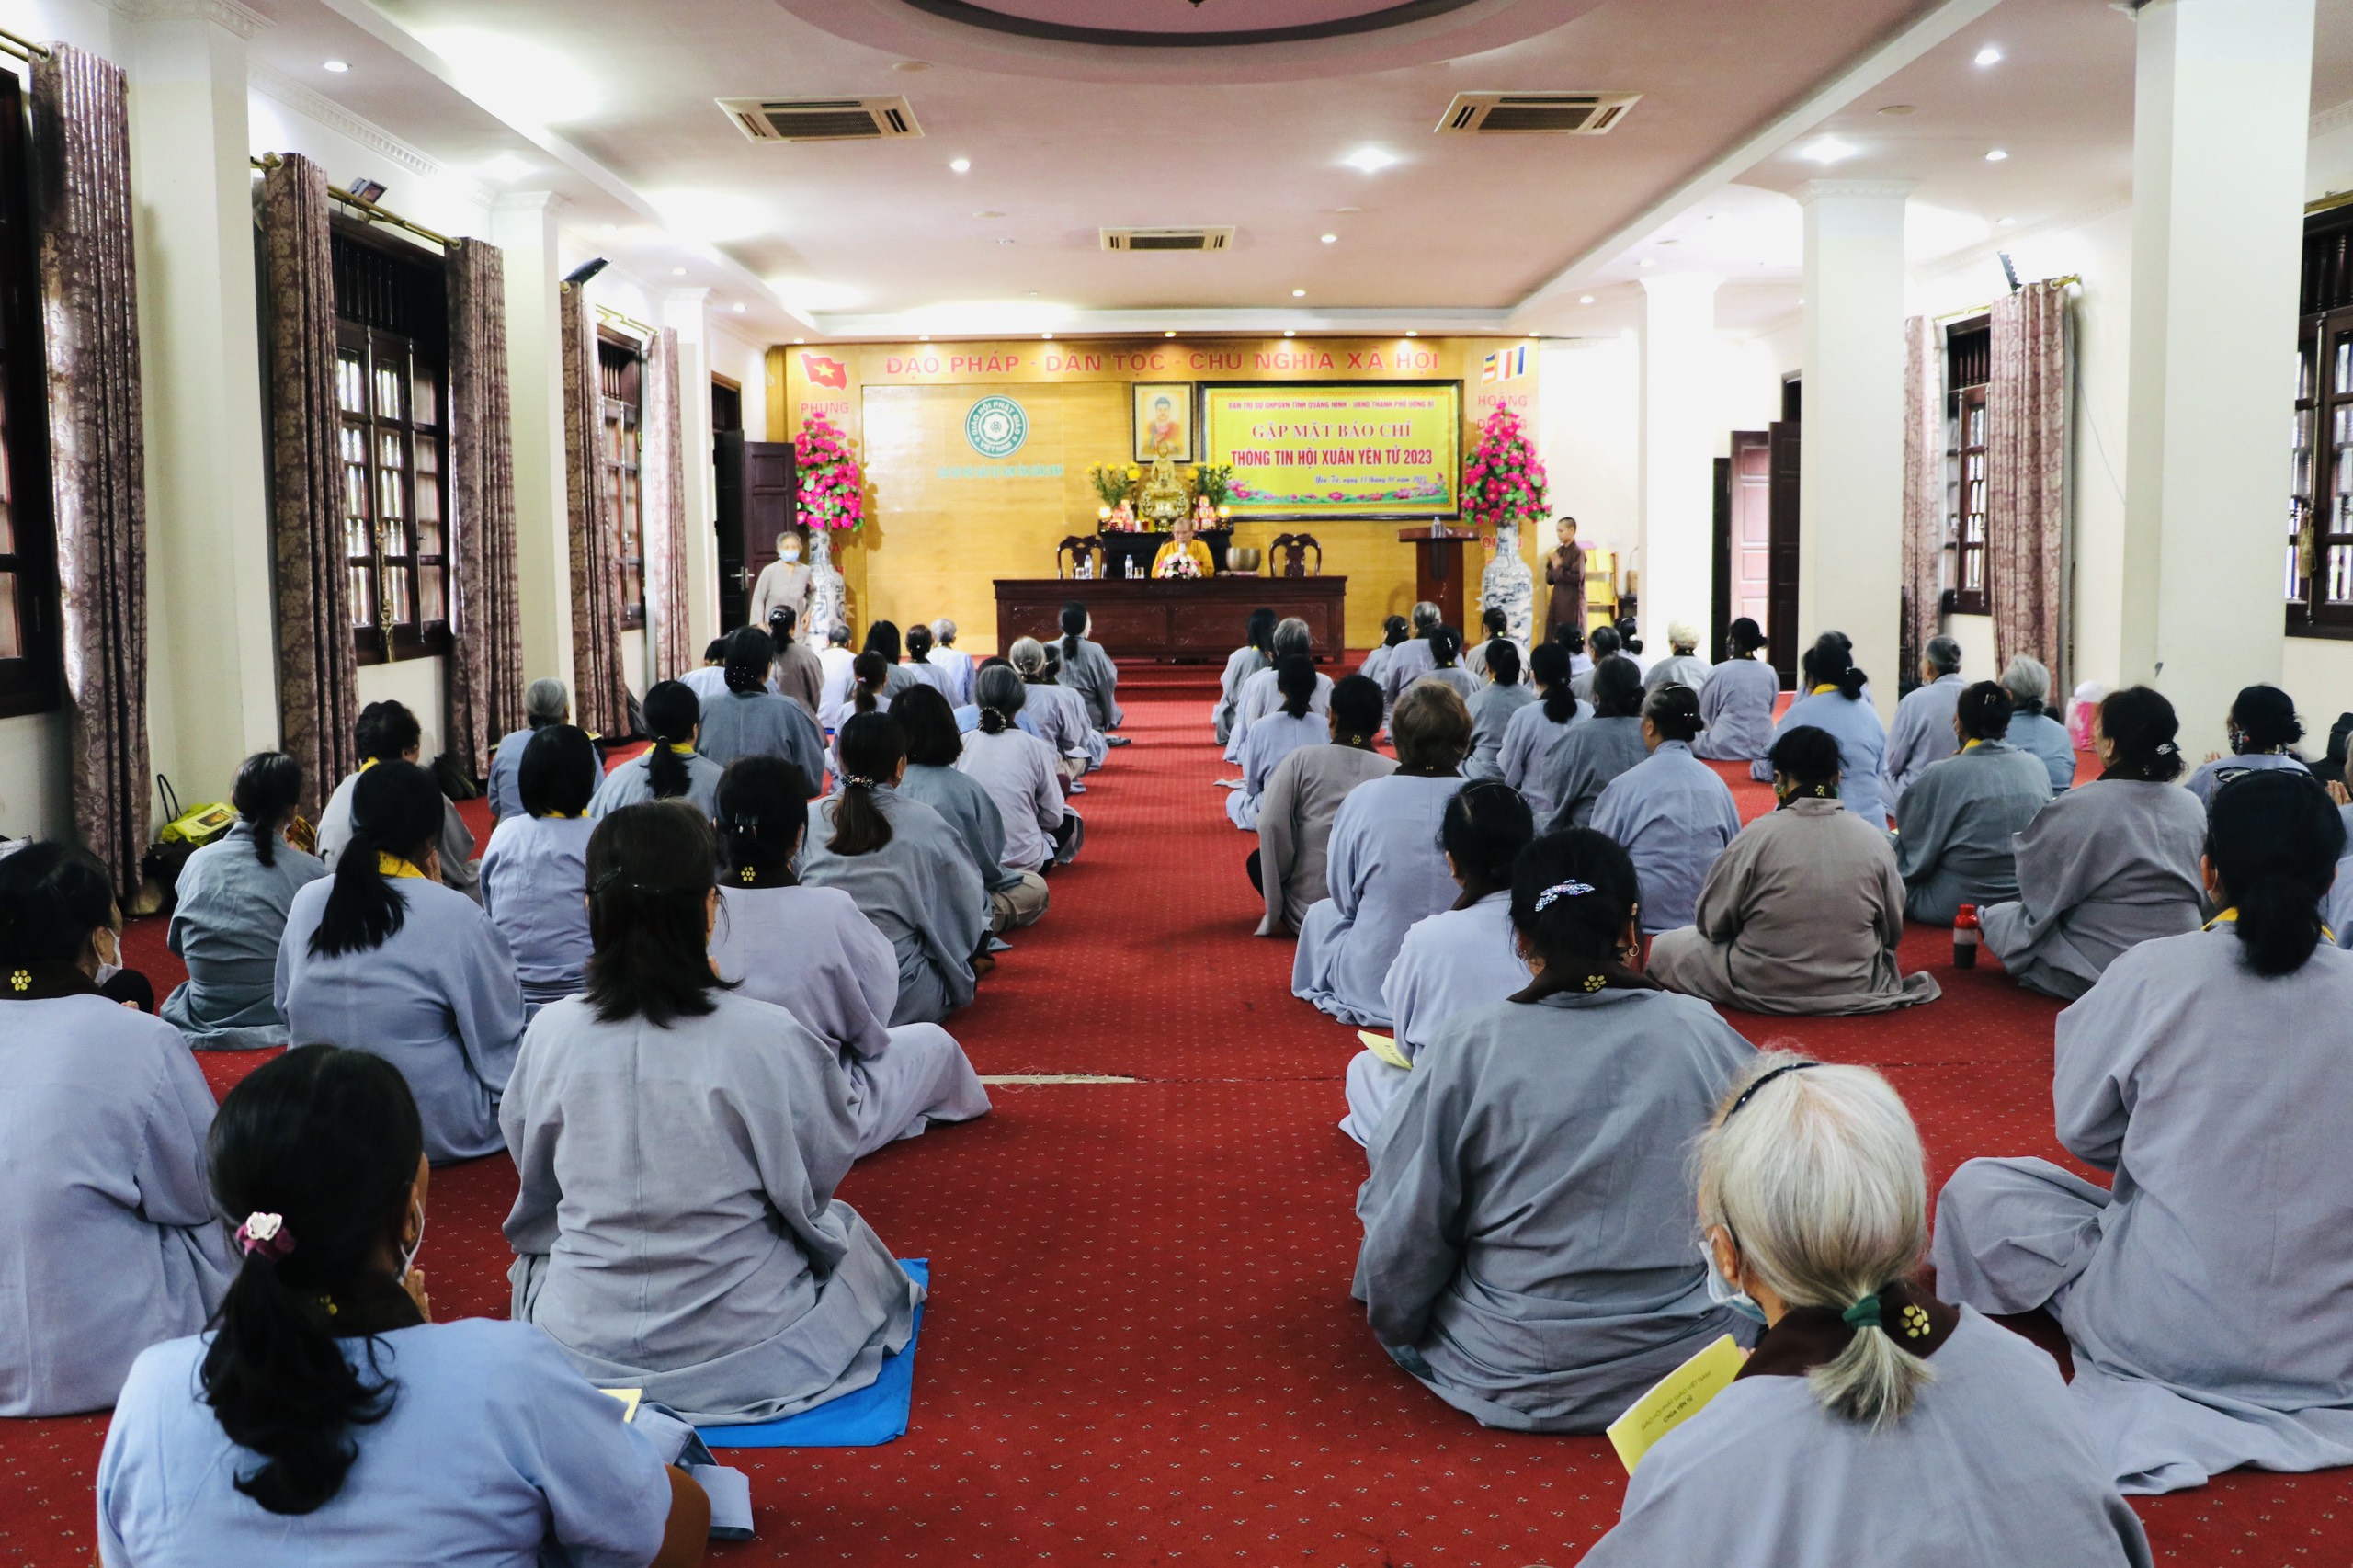 Khóa tu Bát quan trai hàng tháng tại chùa Trình Yên Tử được tổ chức trở lại 